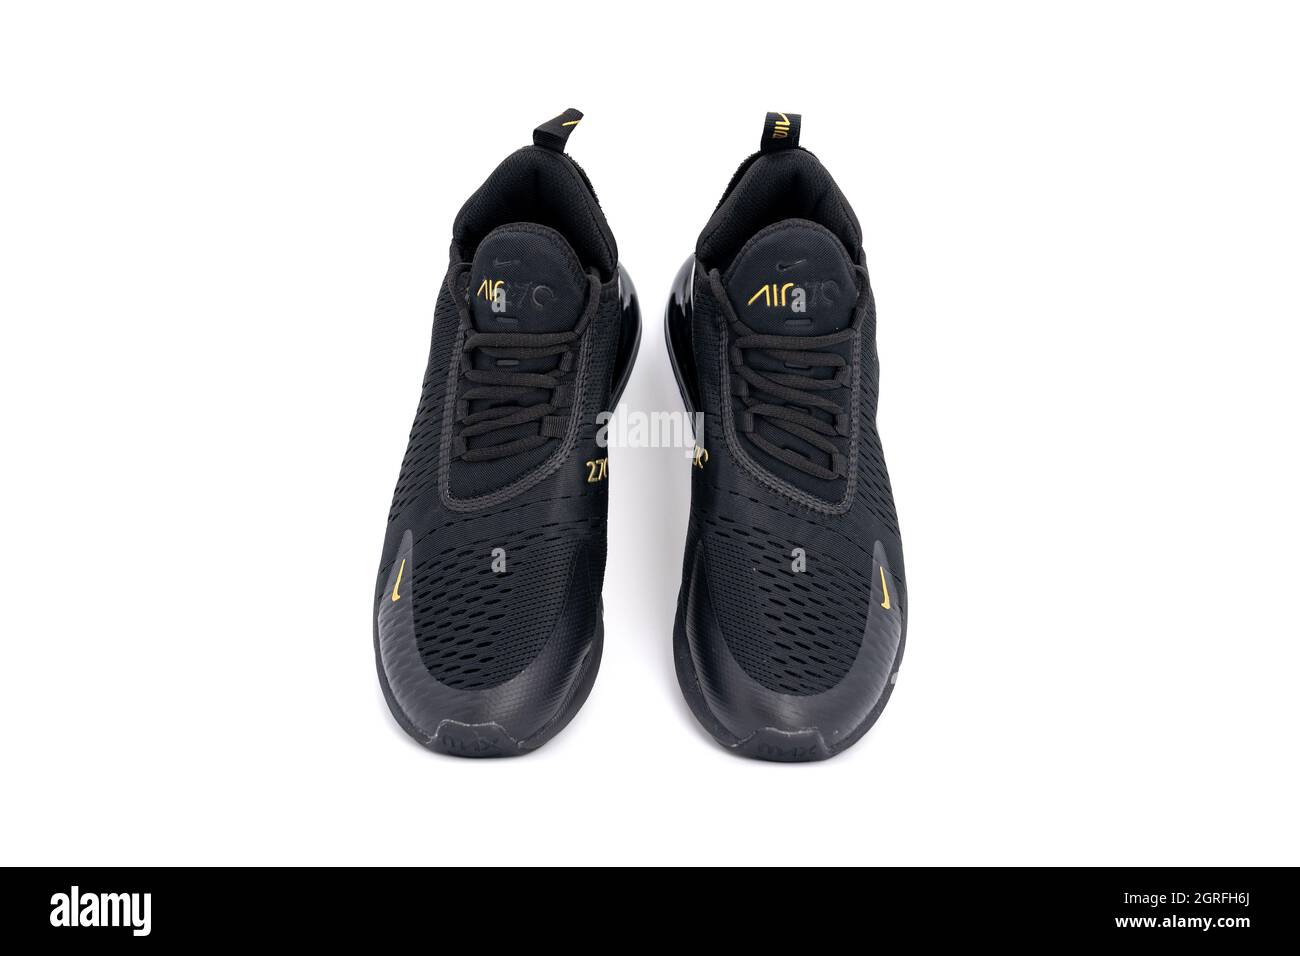 Bangkok, Thailand - 23. März 2020, Nike Air max 270 schwarz und Gold  Sportschuhe für Erwachsene, Sneaker, Sportschuhe Detaillierte Nahaufnahme  auf Studio hellweiß Stockfotografie - Alamy